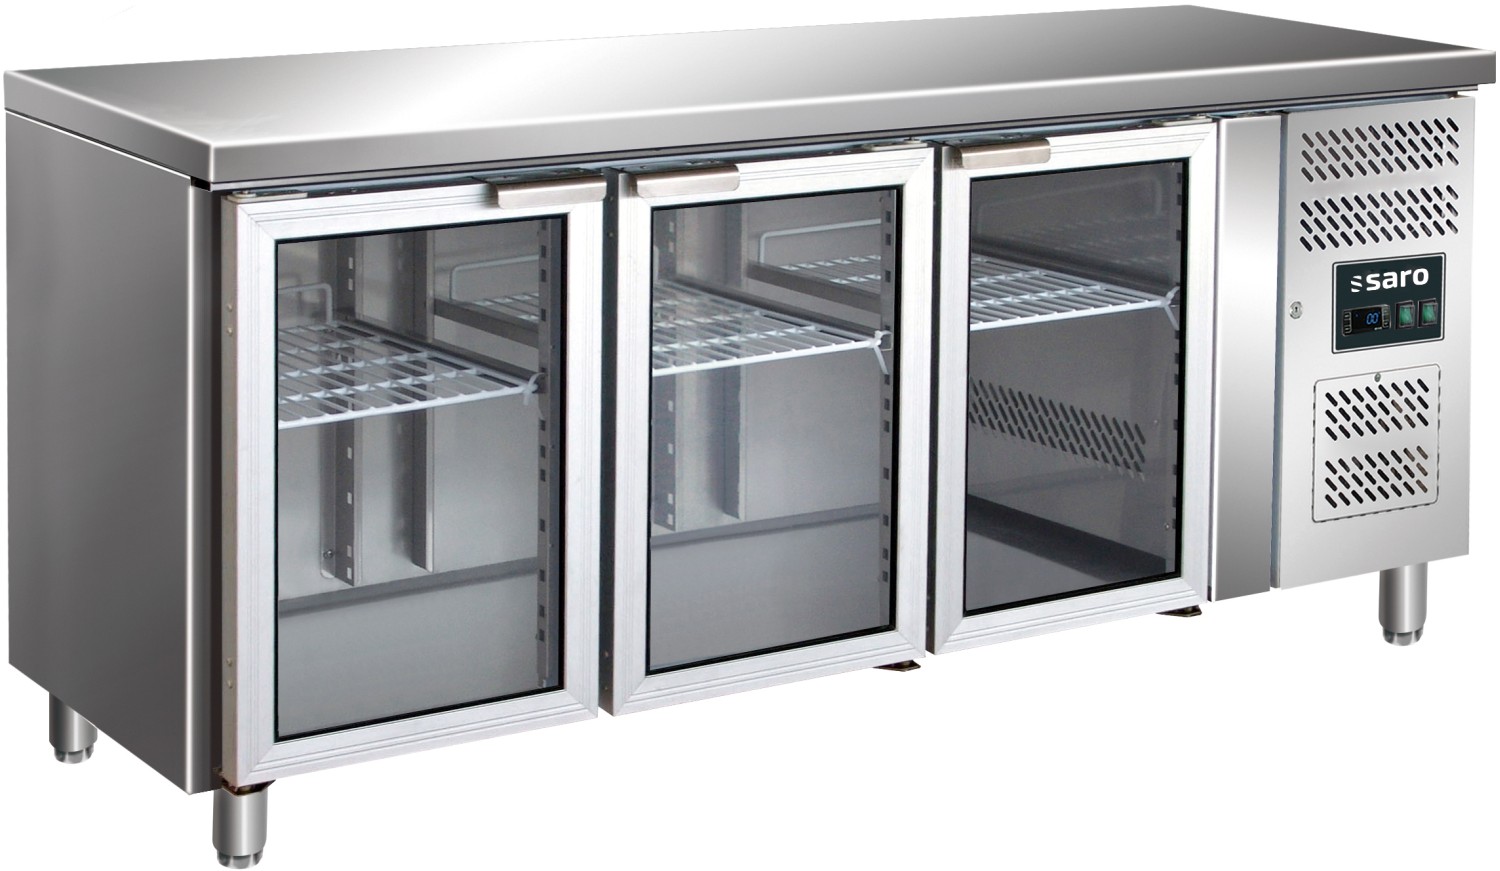  Saro Kühltisch mit 3 Glastüren GN 3100 TNG 